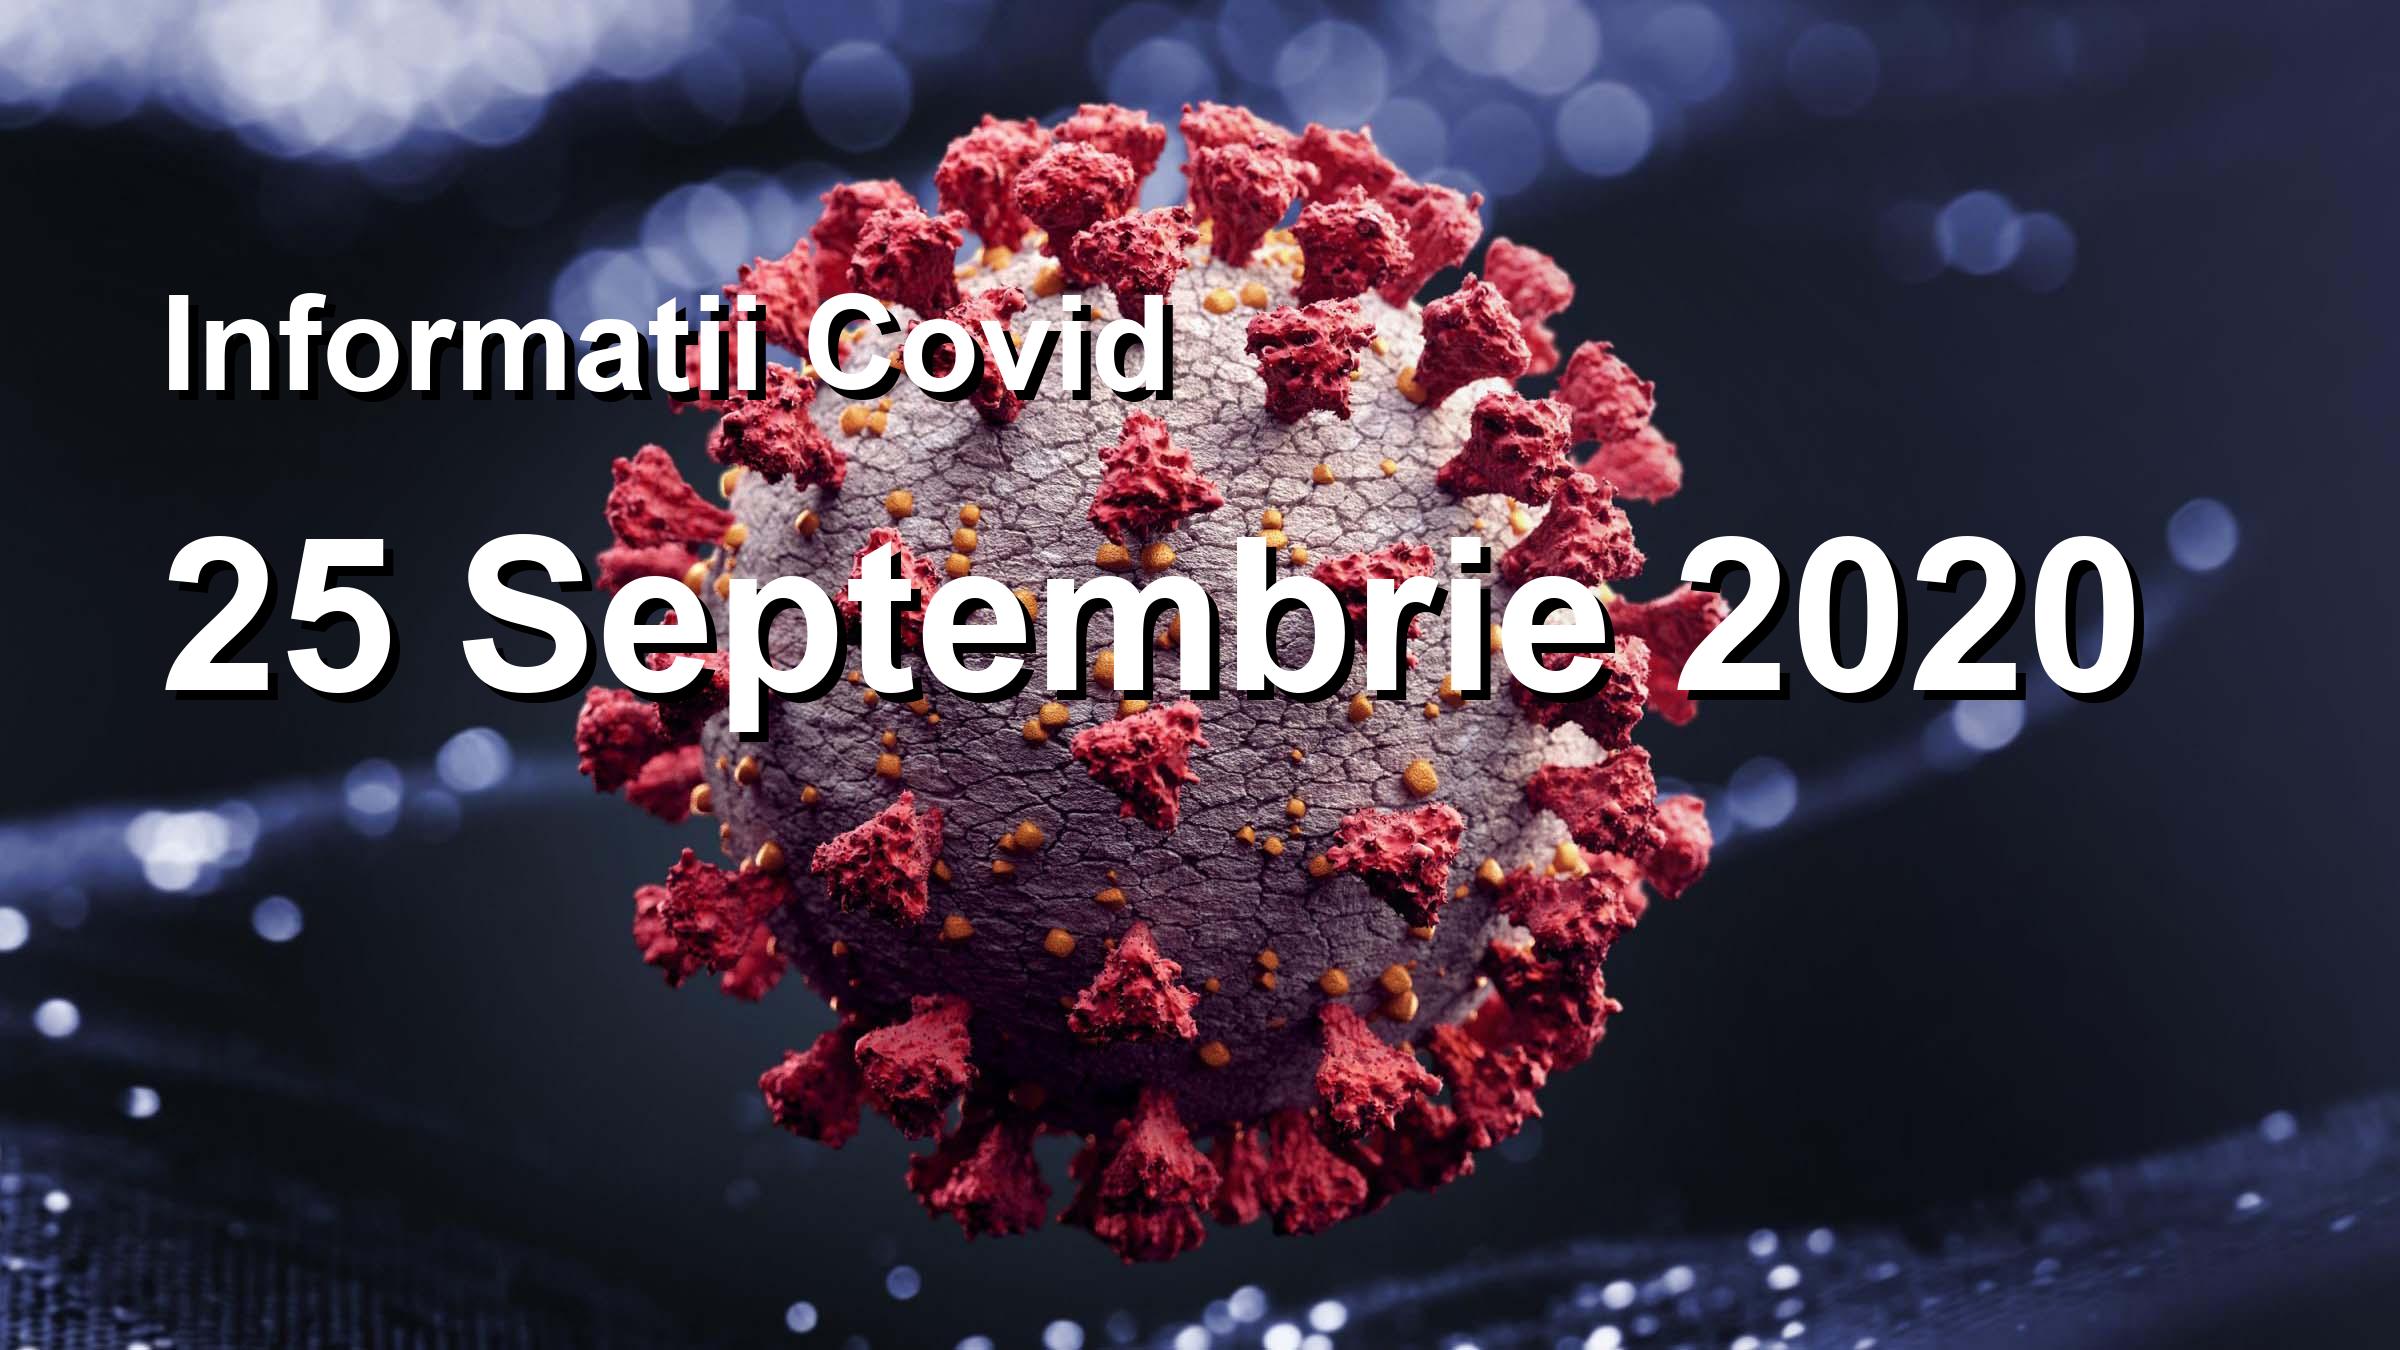 Informatii Covid-19 pentru 25 Septembrie 2020: 1629 infectari, 25494 teste. | Coronavirus Romania